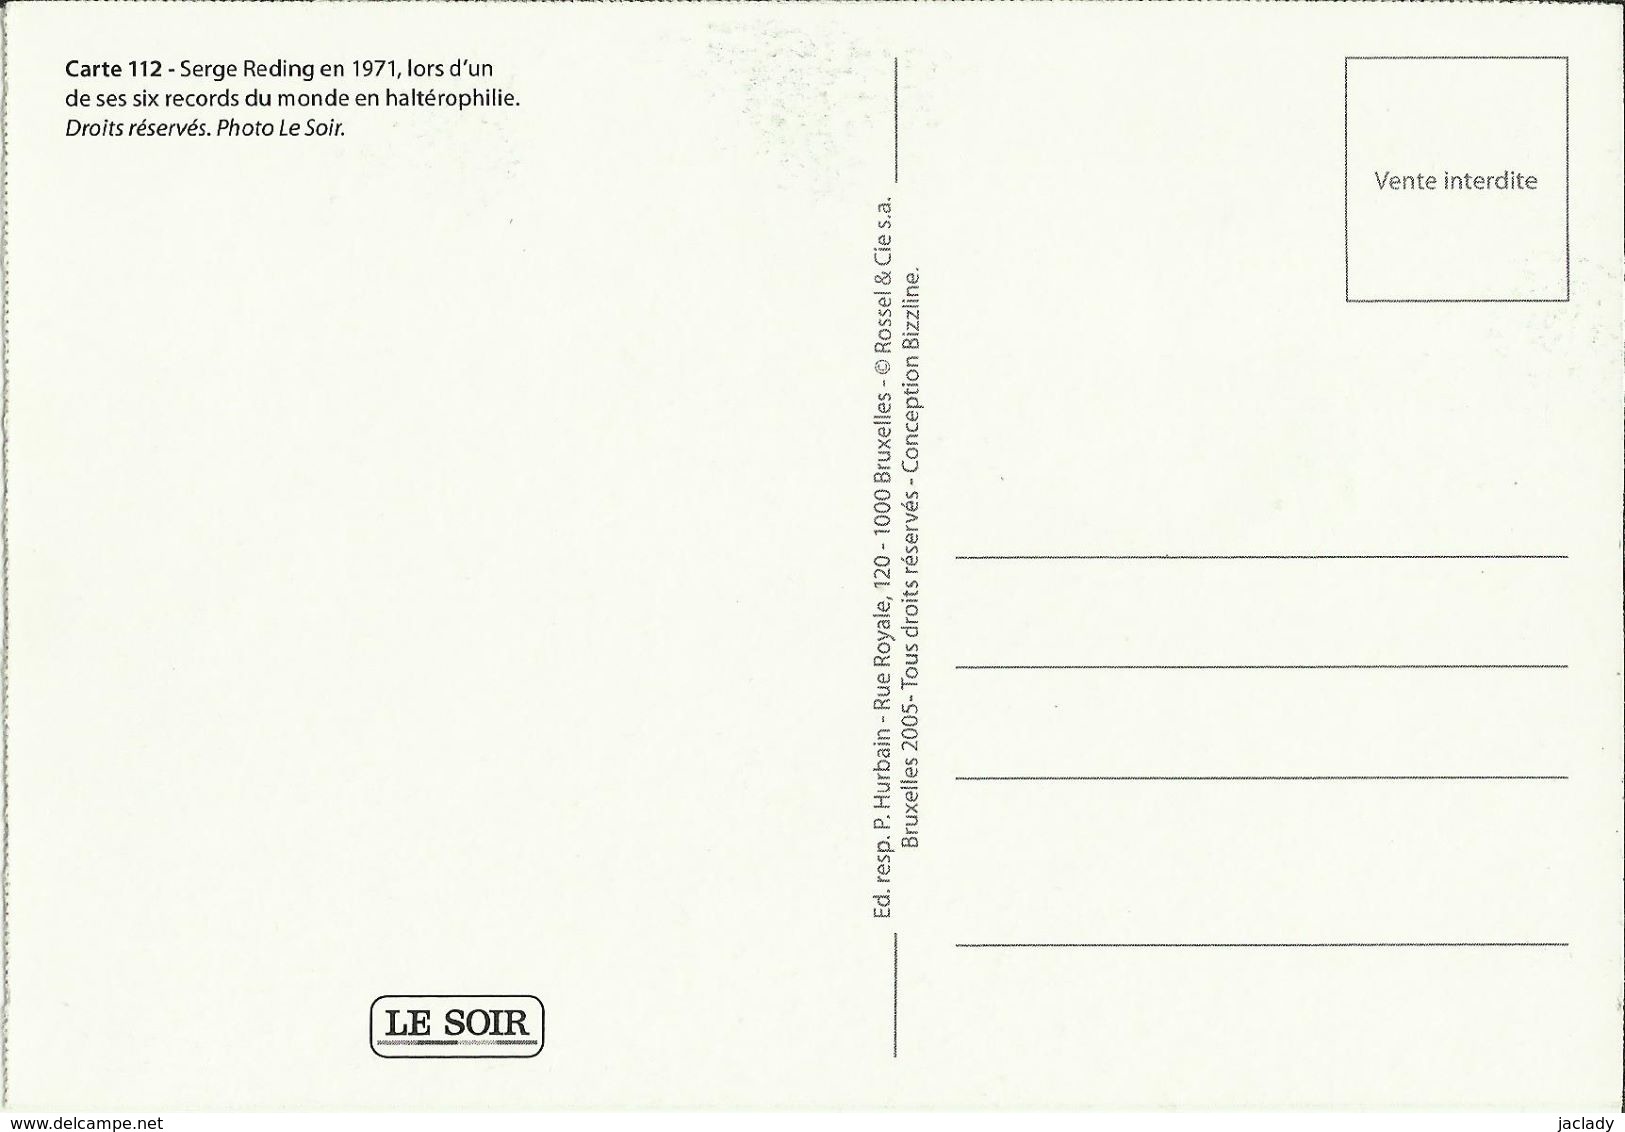 BELGIQUE - Carte N° 112 Du SOIR -- Serge Reding En 1971, Lors D'un De Ses 6 Records Du Monde En Haltérophilie. - Halterofilia